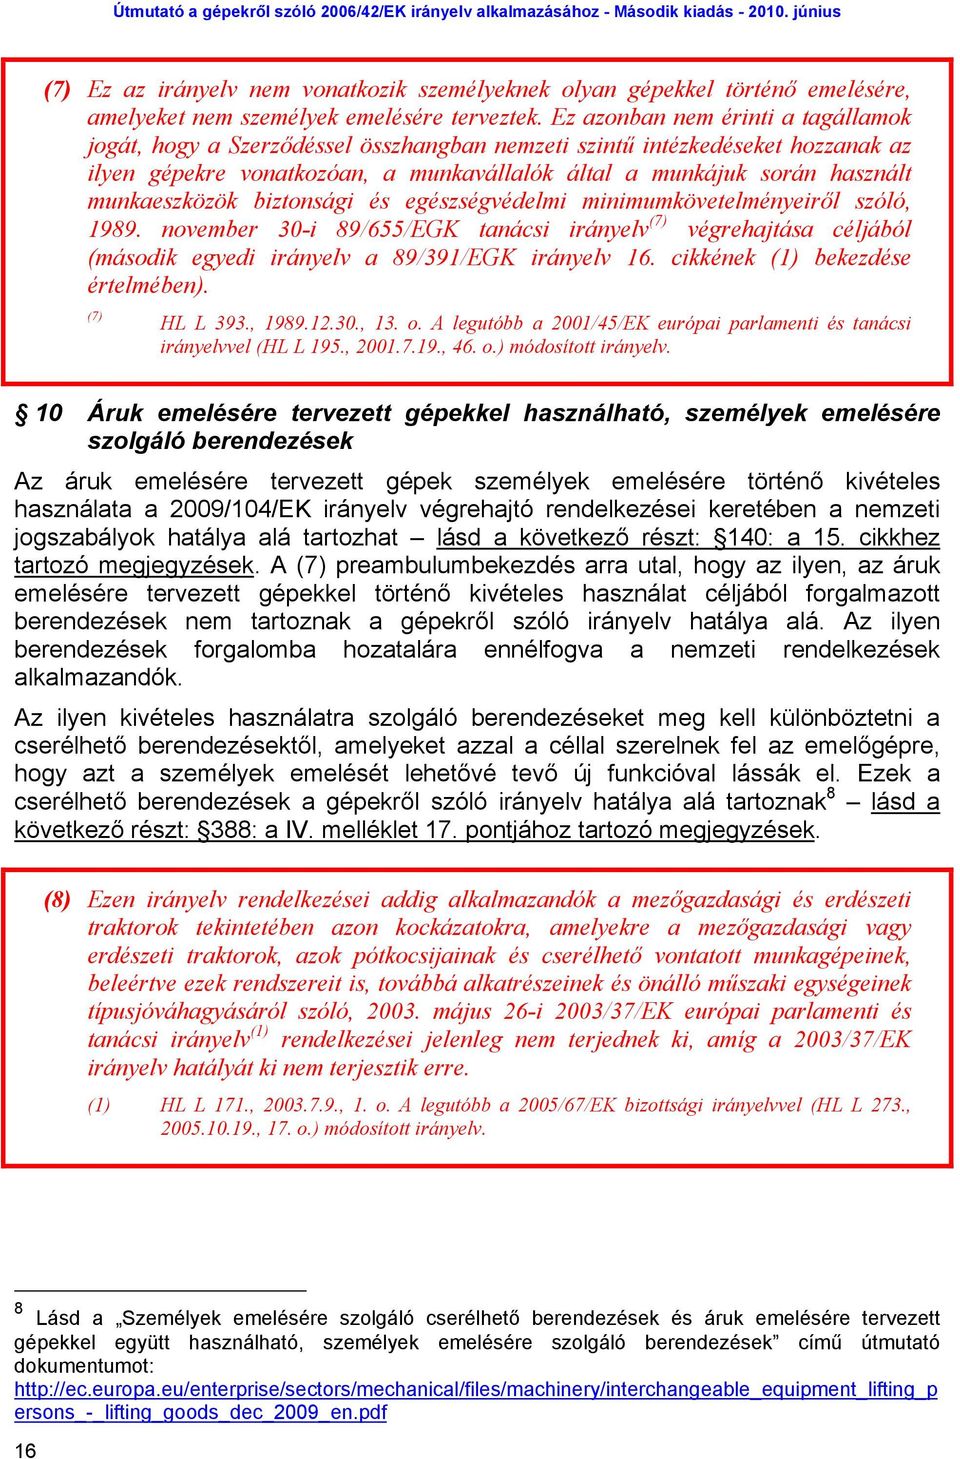 munkaeszközök biztonsági és egészségvédelmi minimumkövetelményeiről szóló, 1989. november 30-i 89/655/EGK tanácsi irányelv (7) végrehajtása céljából (második egyedi irányelv a 89/391/EGK irányelv 16.